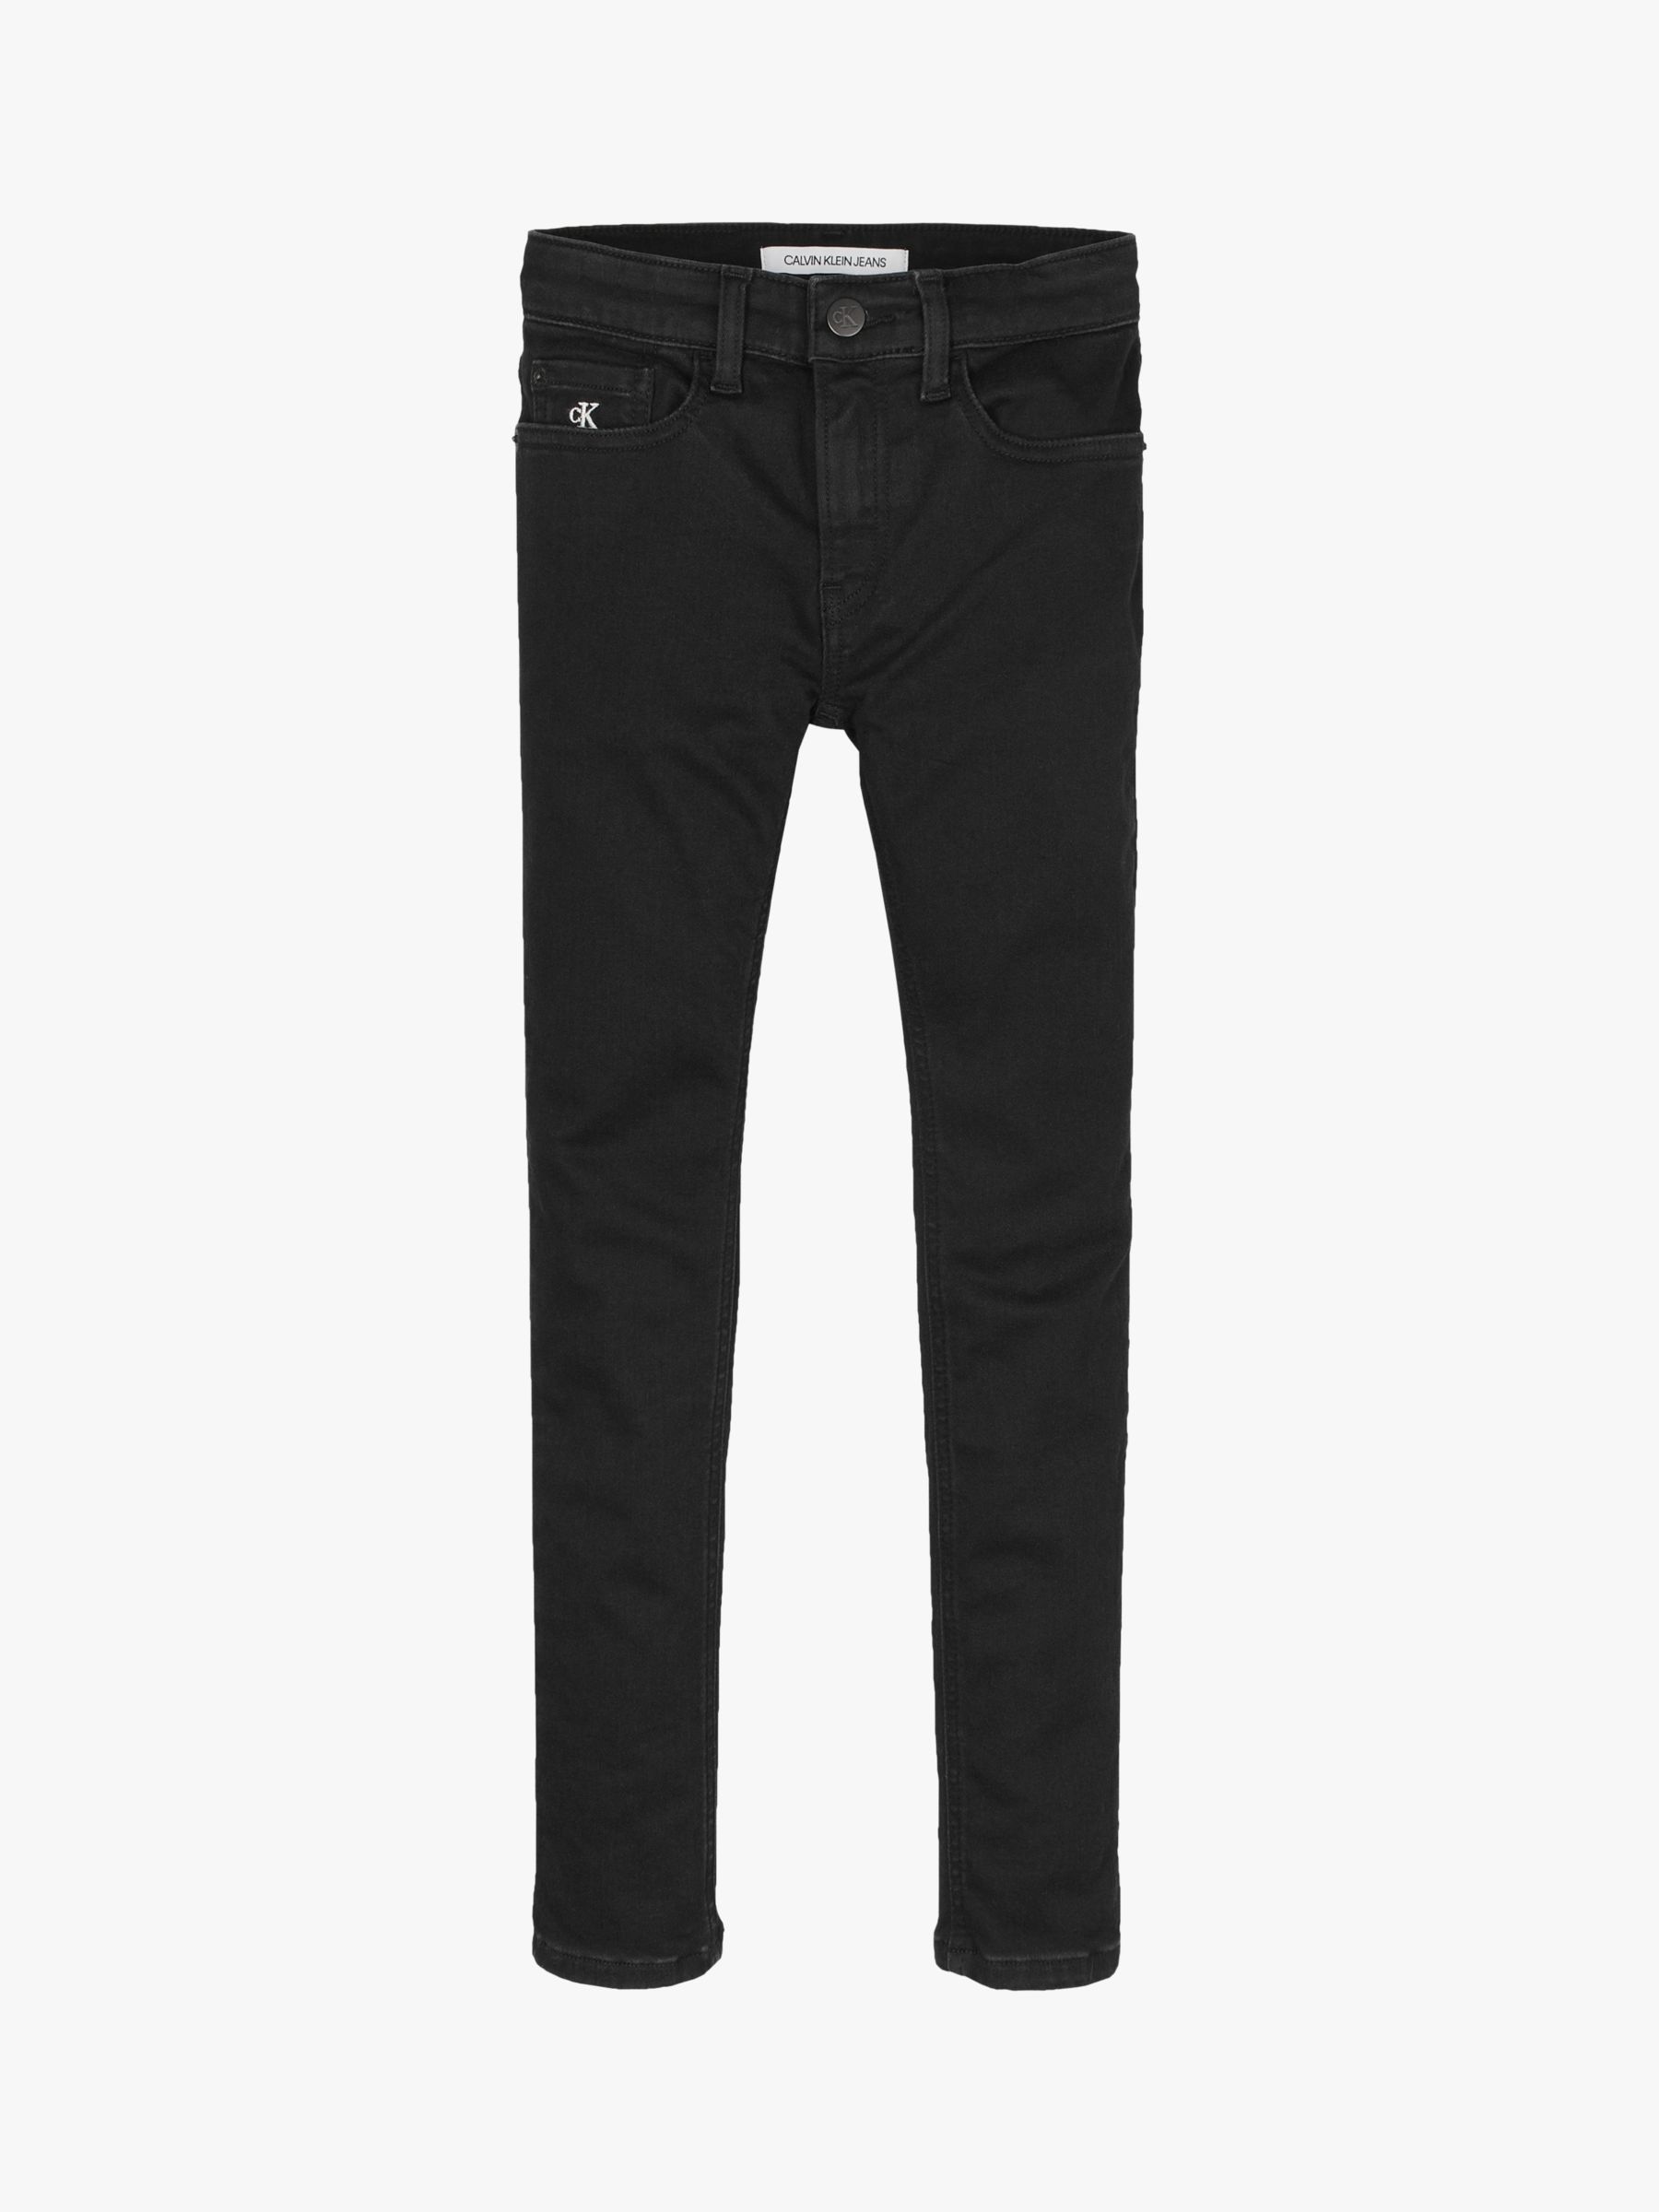 Calvin Klein Boys' Denim Skinny Jeans, Clean Black, 6 years